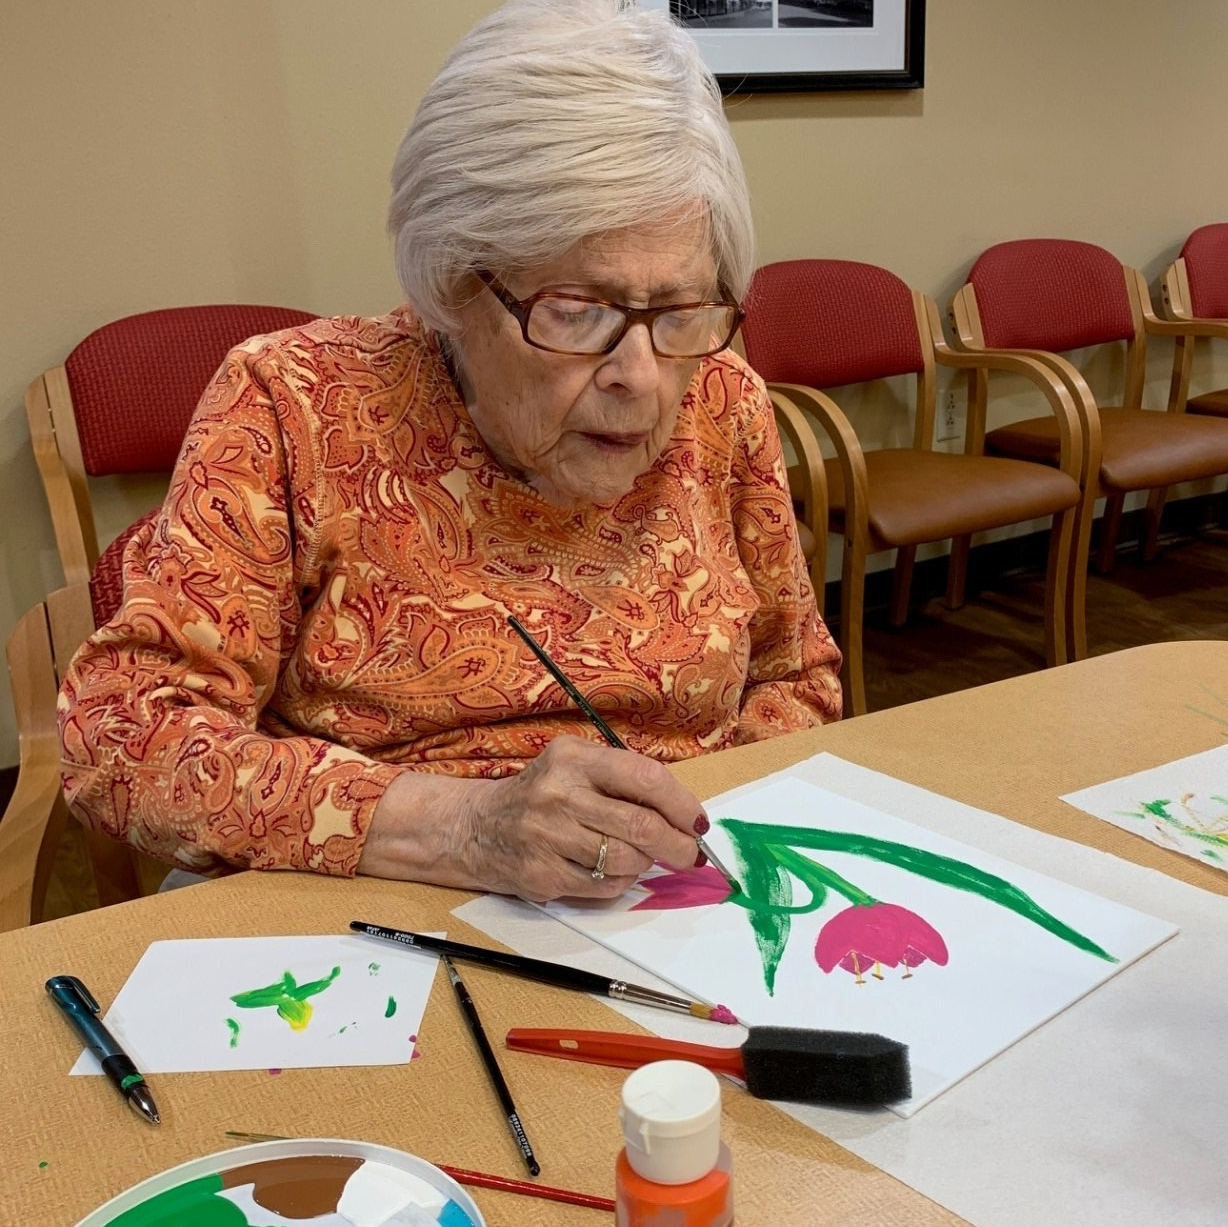 senior living resident painting flowers on paper